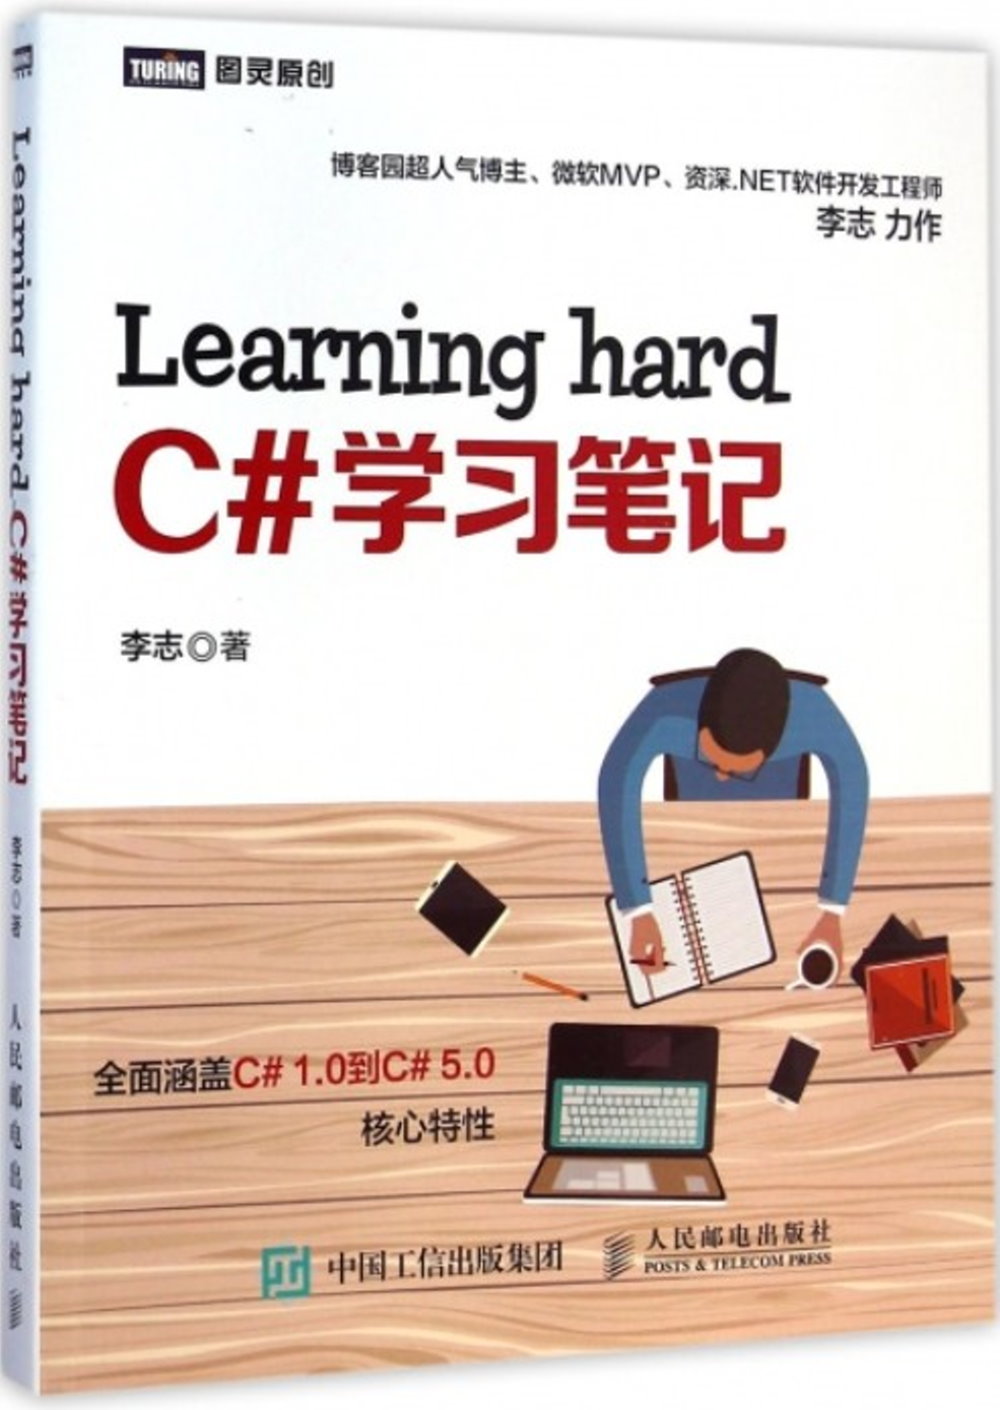 Learning hard C#學習筆記